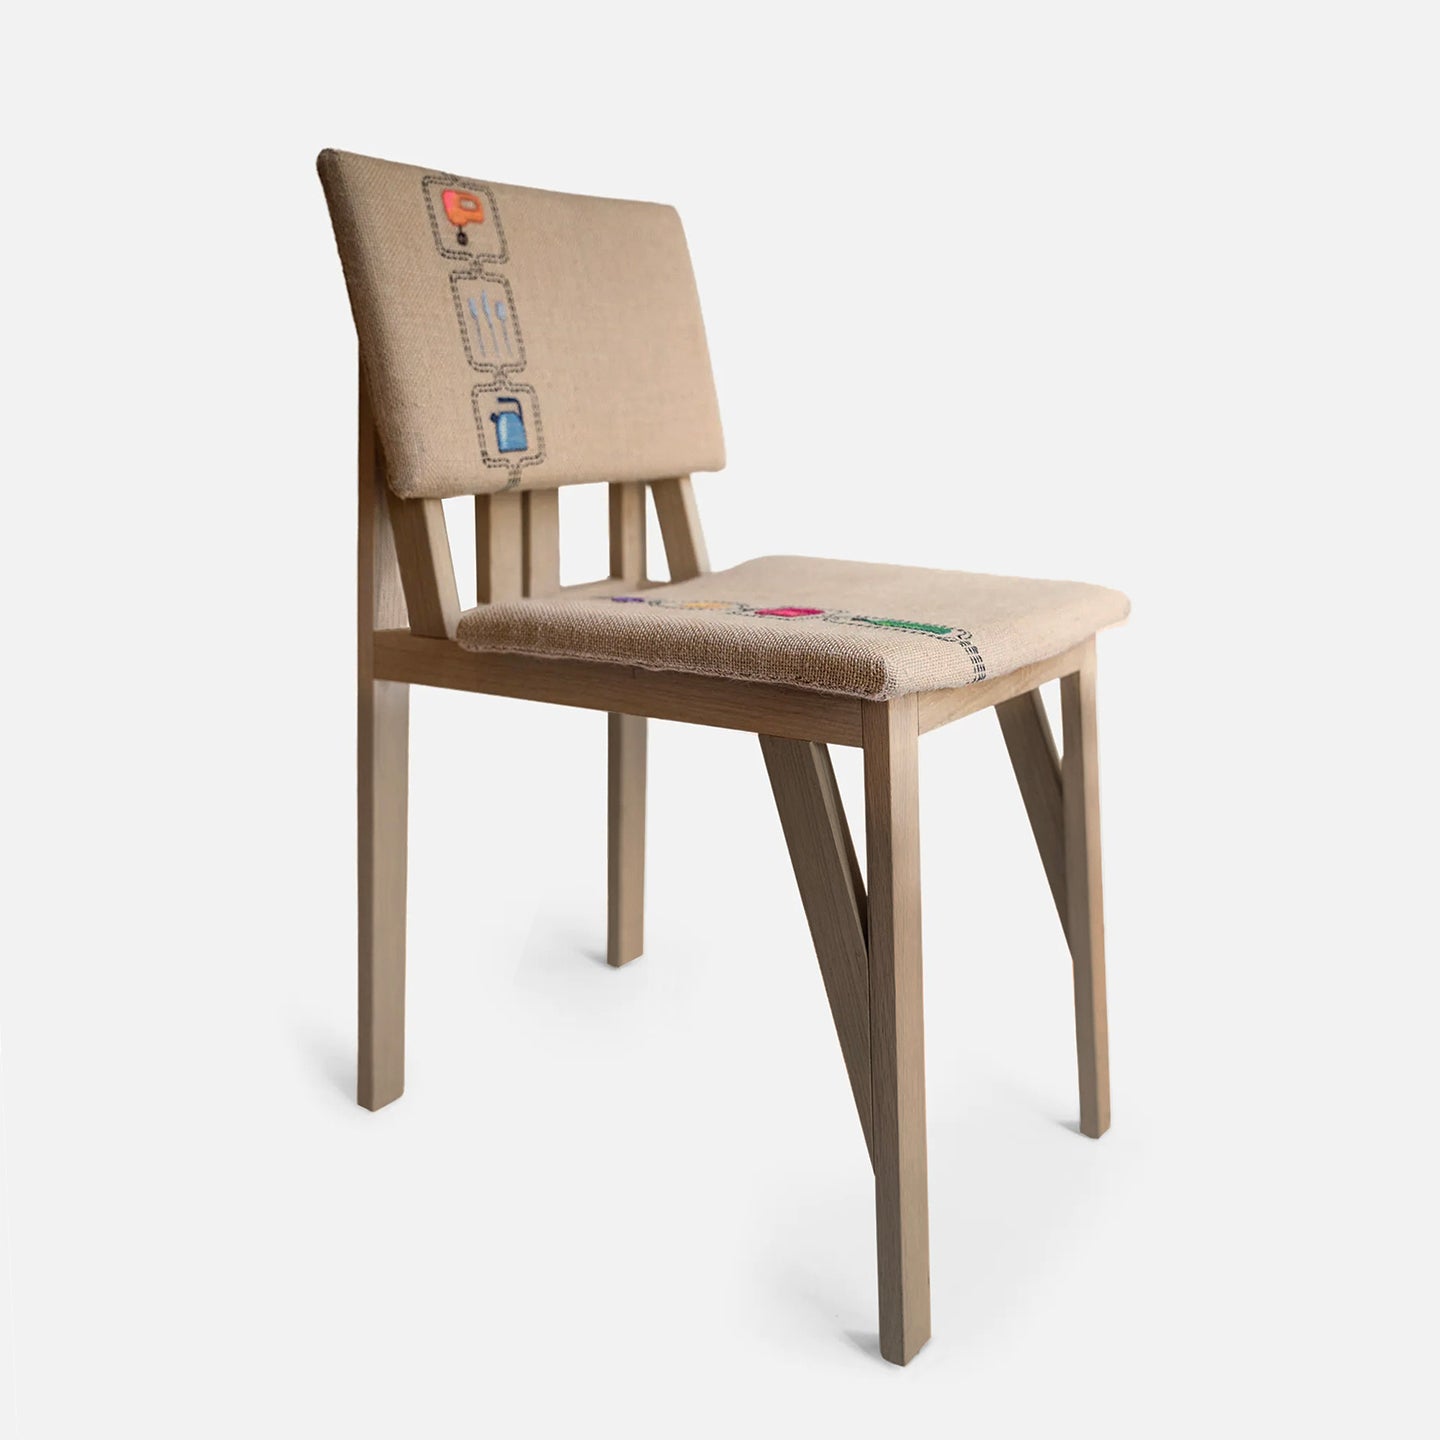 pretty ordinairy kitschen chair arp design